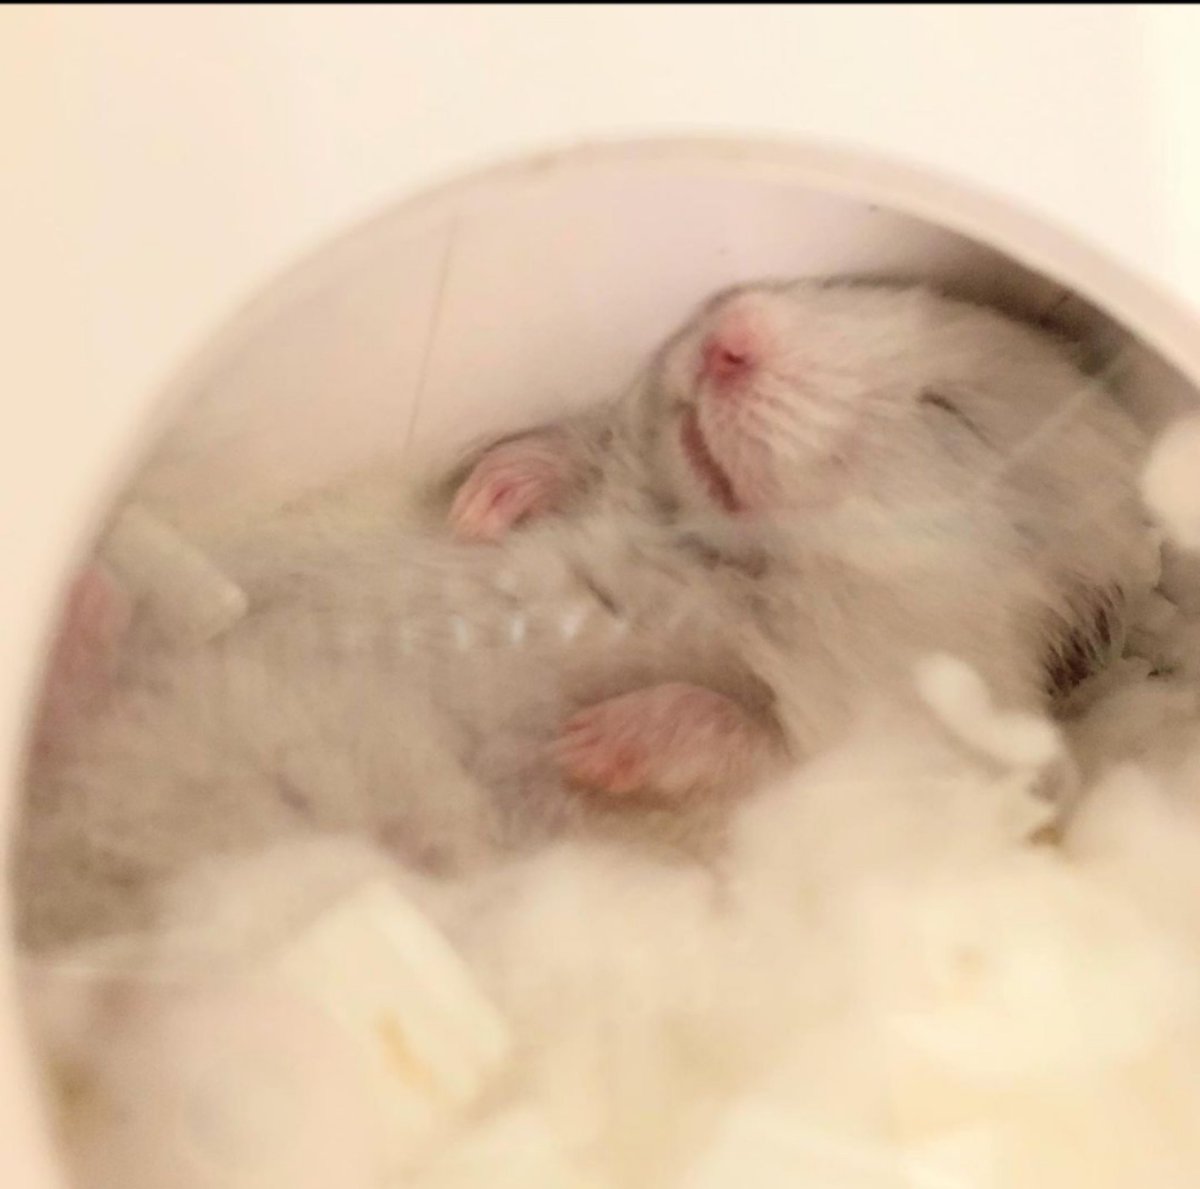 綺麗に仰向けで寝ているブルームくん🐭

どんな夢をみてるのかな？💤

#hamster #bloom #syrianhamster #ハムスター #ブルーム #お昼寝 #おねんね #夢 #ぐっすり